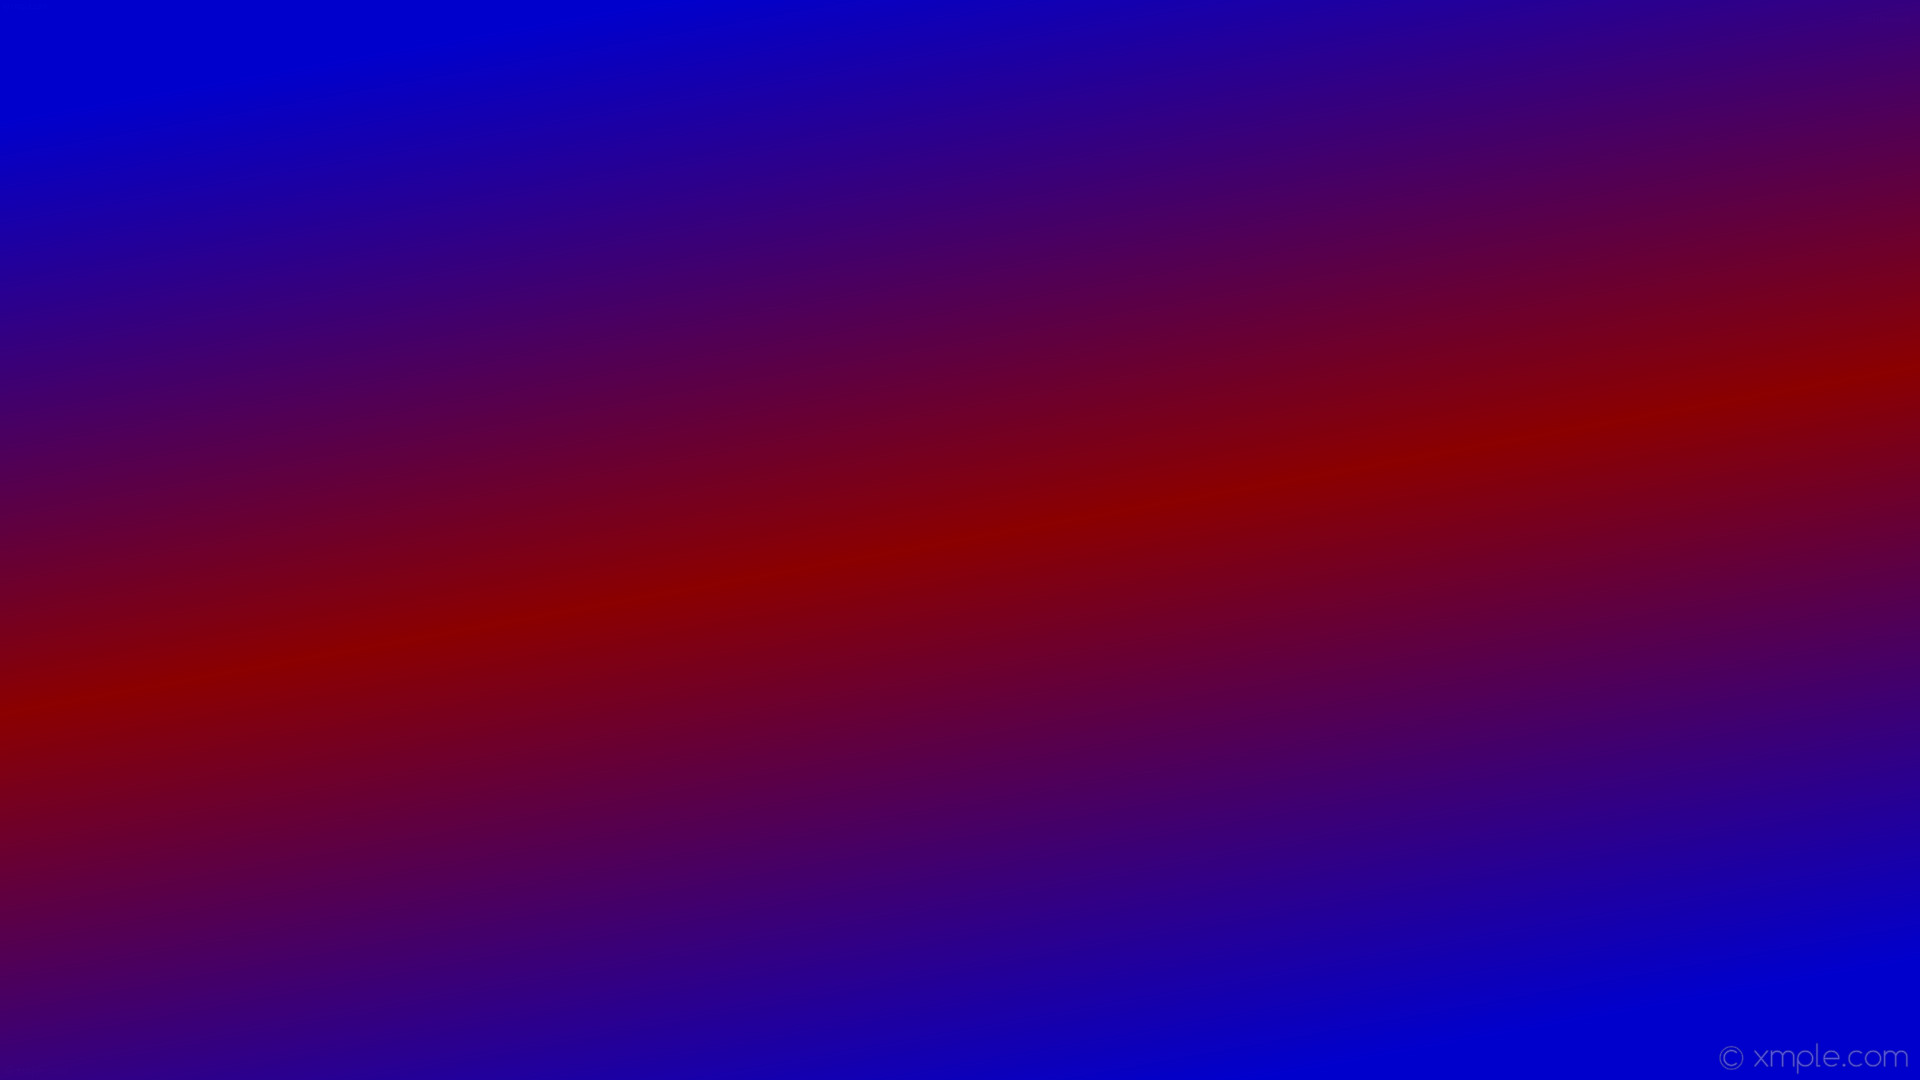 1920x1080 wallpaper highlight red blue gradient linear medium blue dark red #0000cd  #8b0000 120Â°